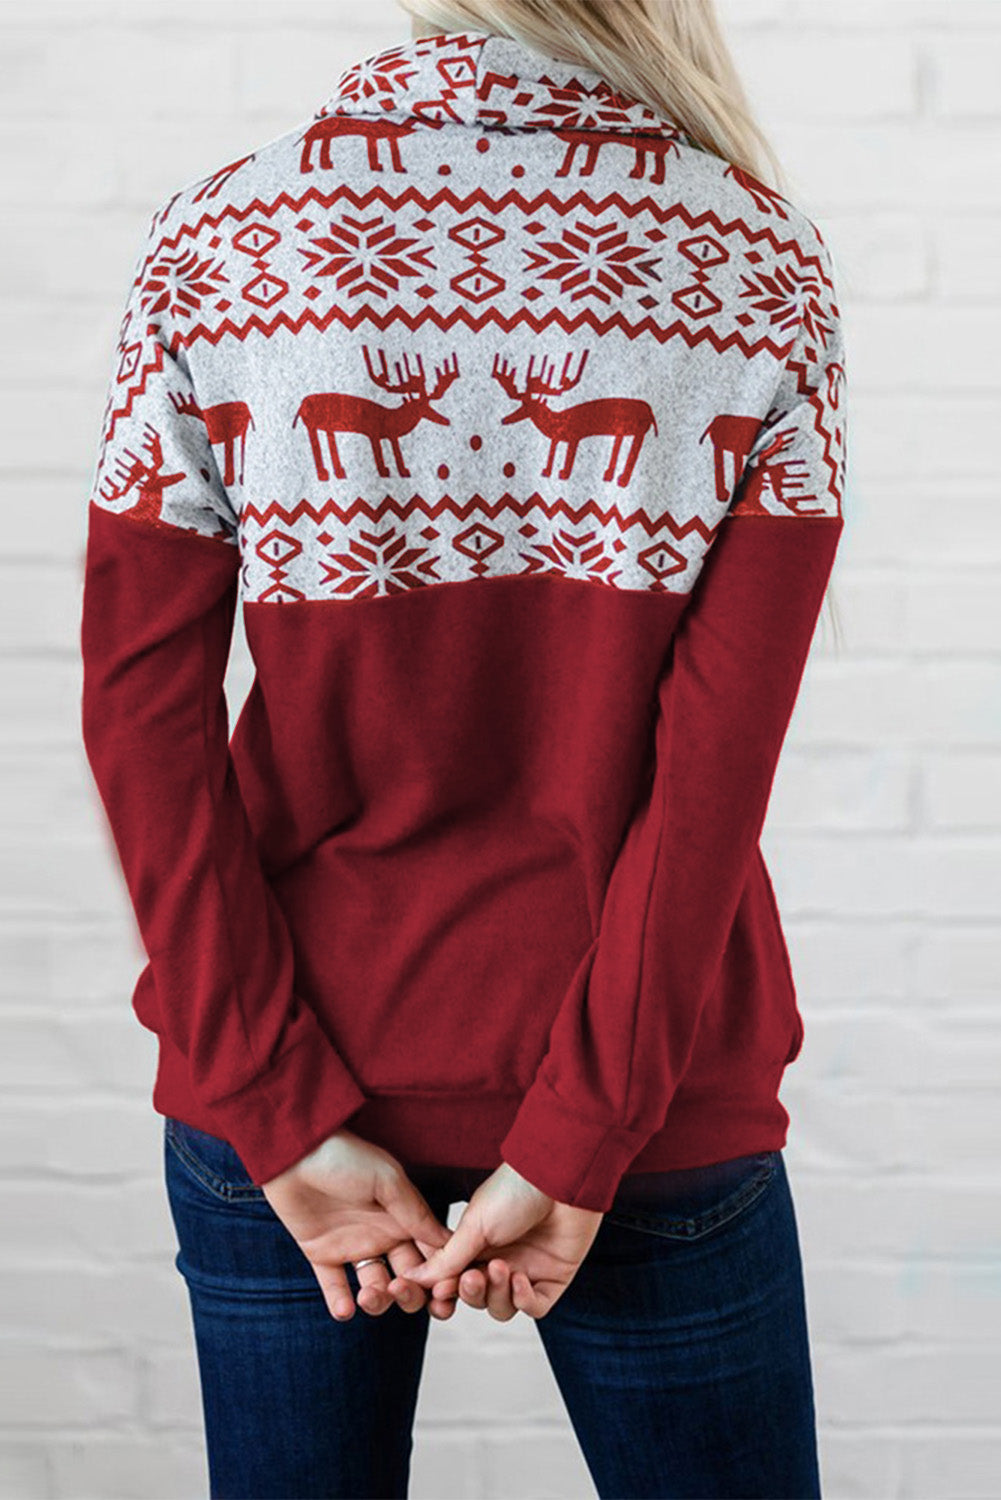 Pletena majica z ovratnikom z ovratnikom v bordo barvi z božičnim vzorcem losov